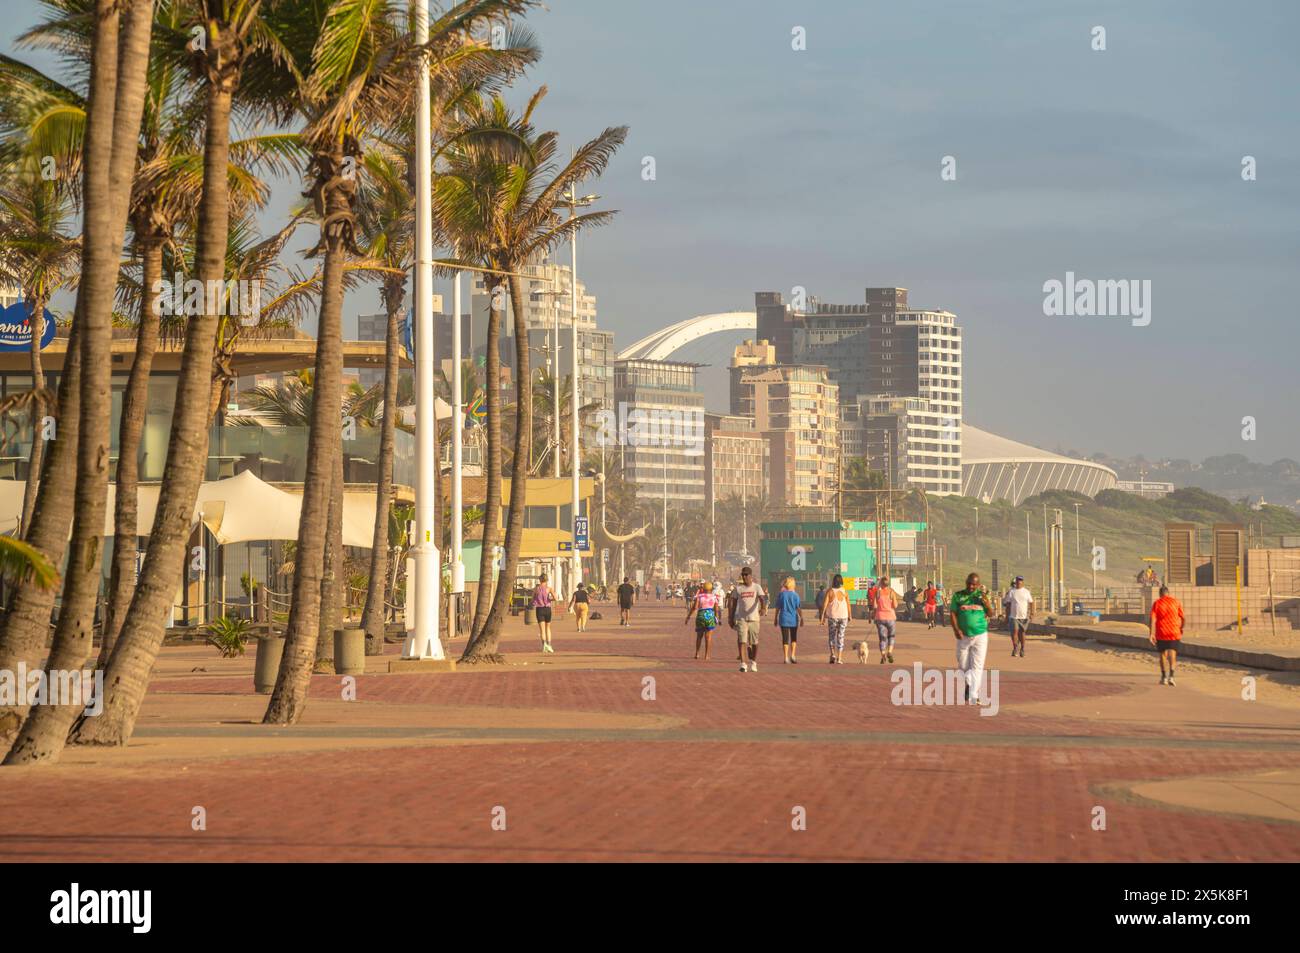 Vista della passeggiata e dello stadio Moses Mabhida sullo sfondo, Durban, provincia di KwaZulu-Natal, Sudafrica, Africa Copyright: FrankxFell 844-33331 Foto Stock